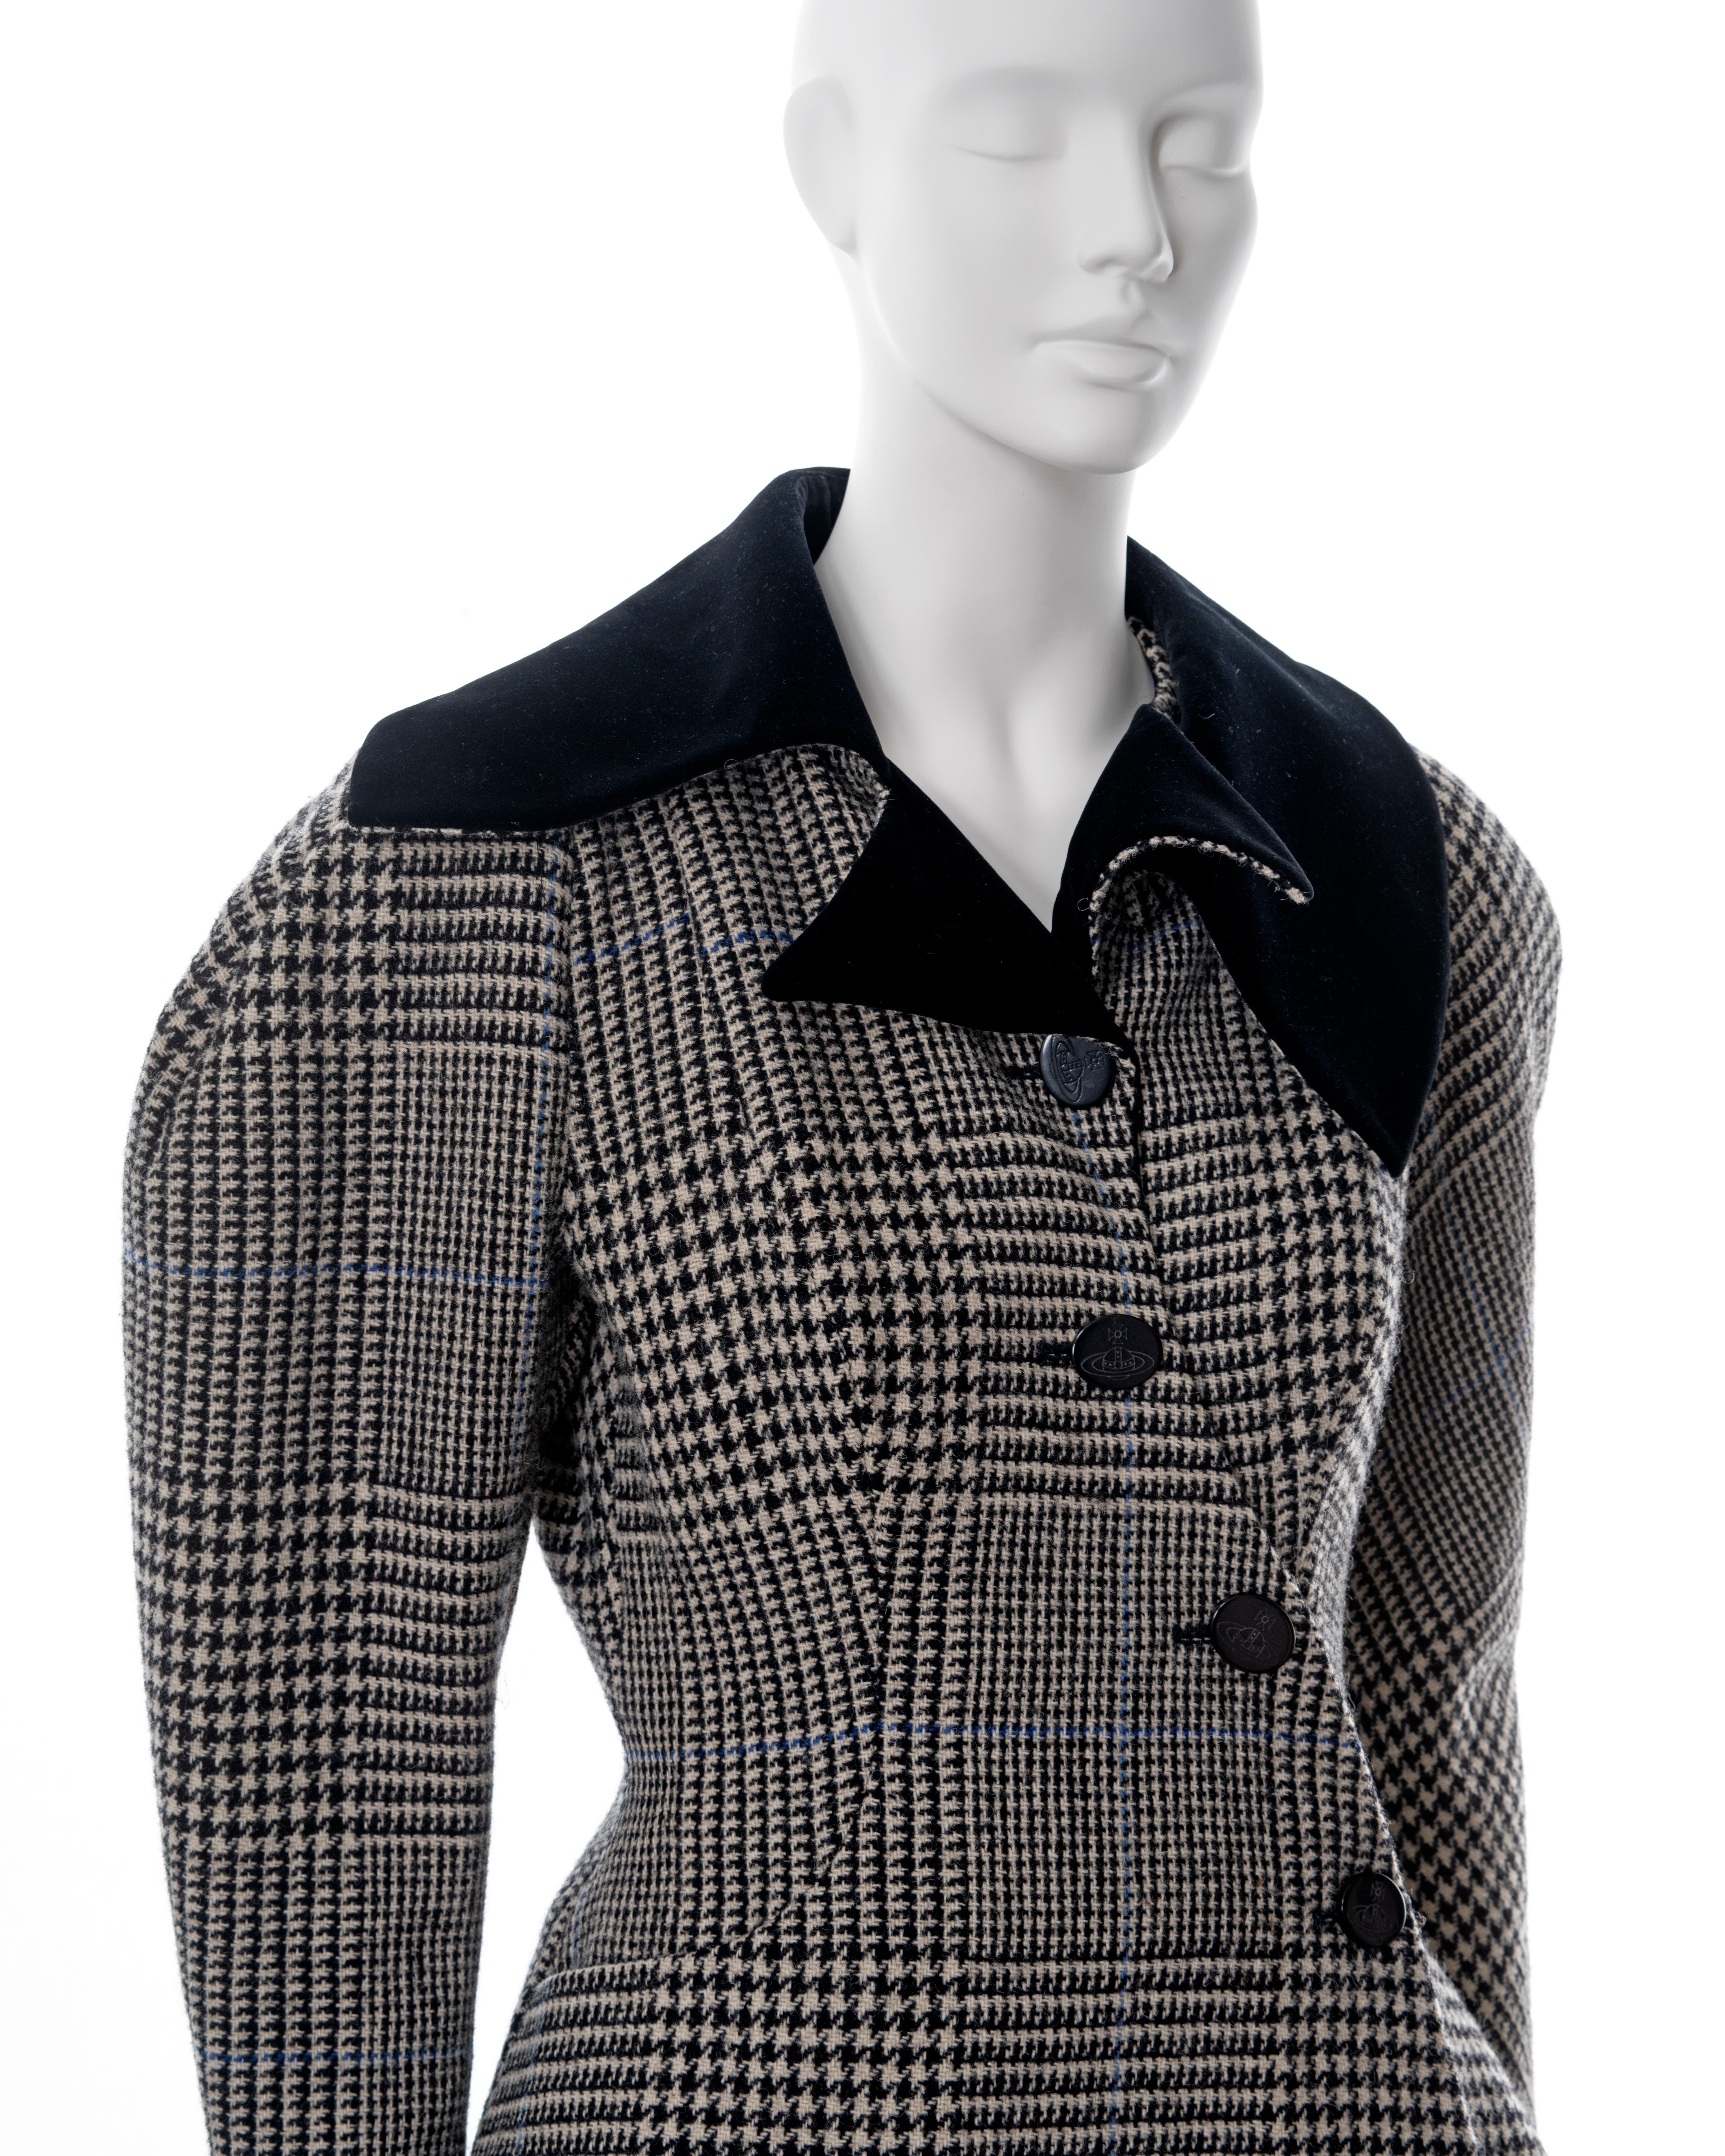 Vivienne Westwood grey houndstooth check tweed skirt suit, fw 1996 2